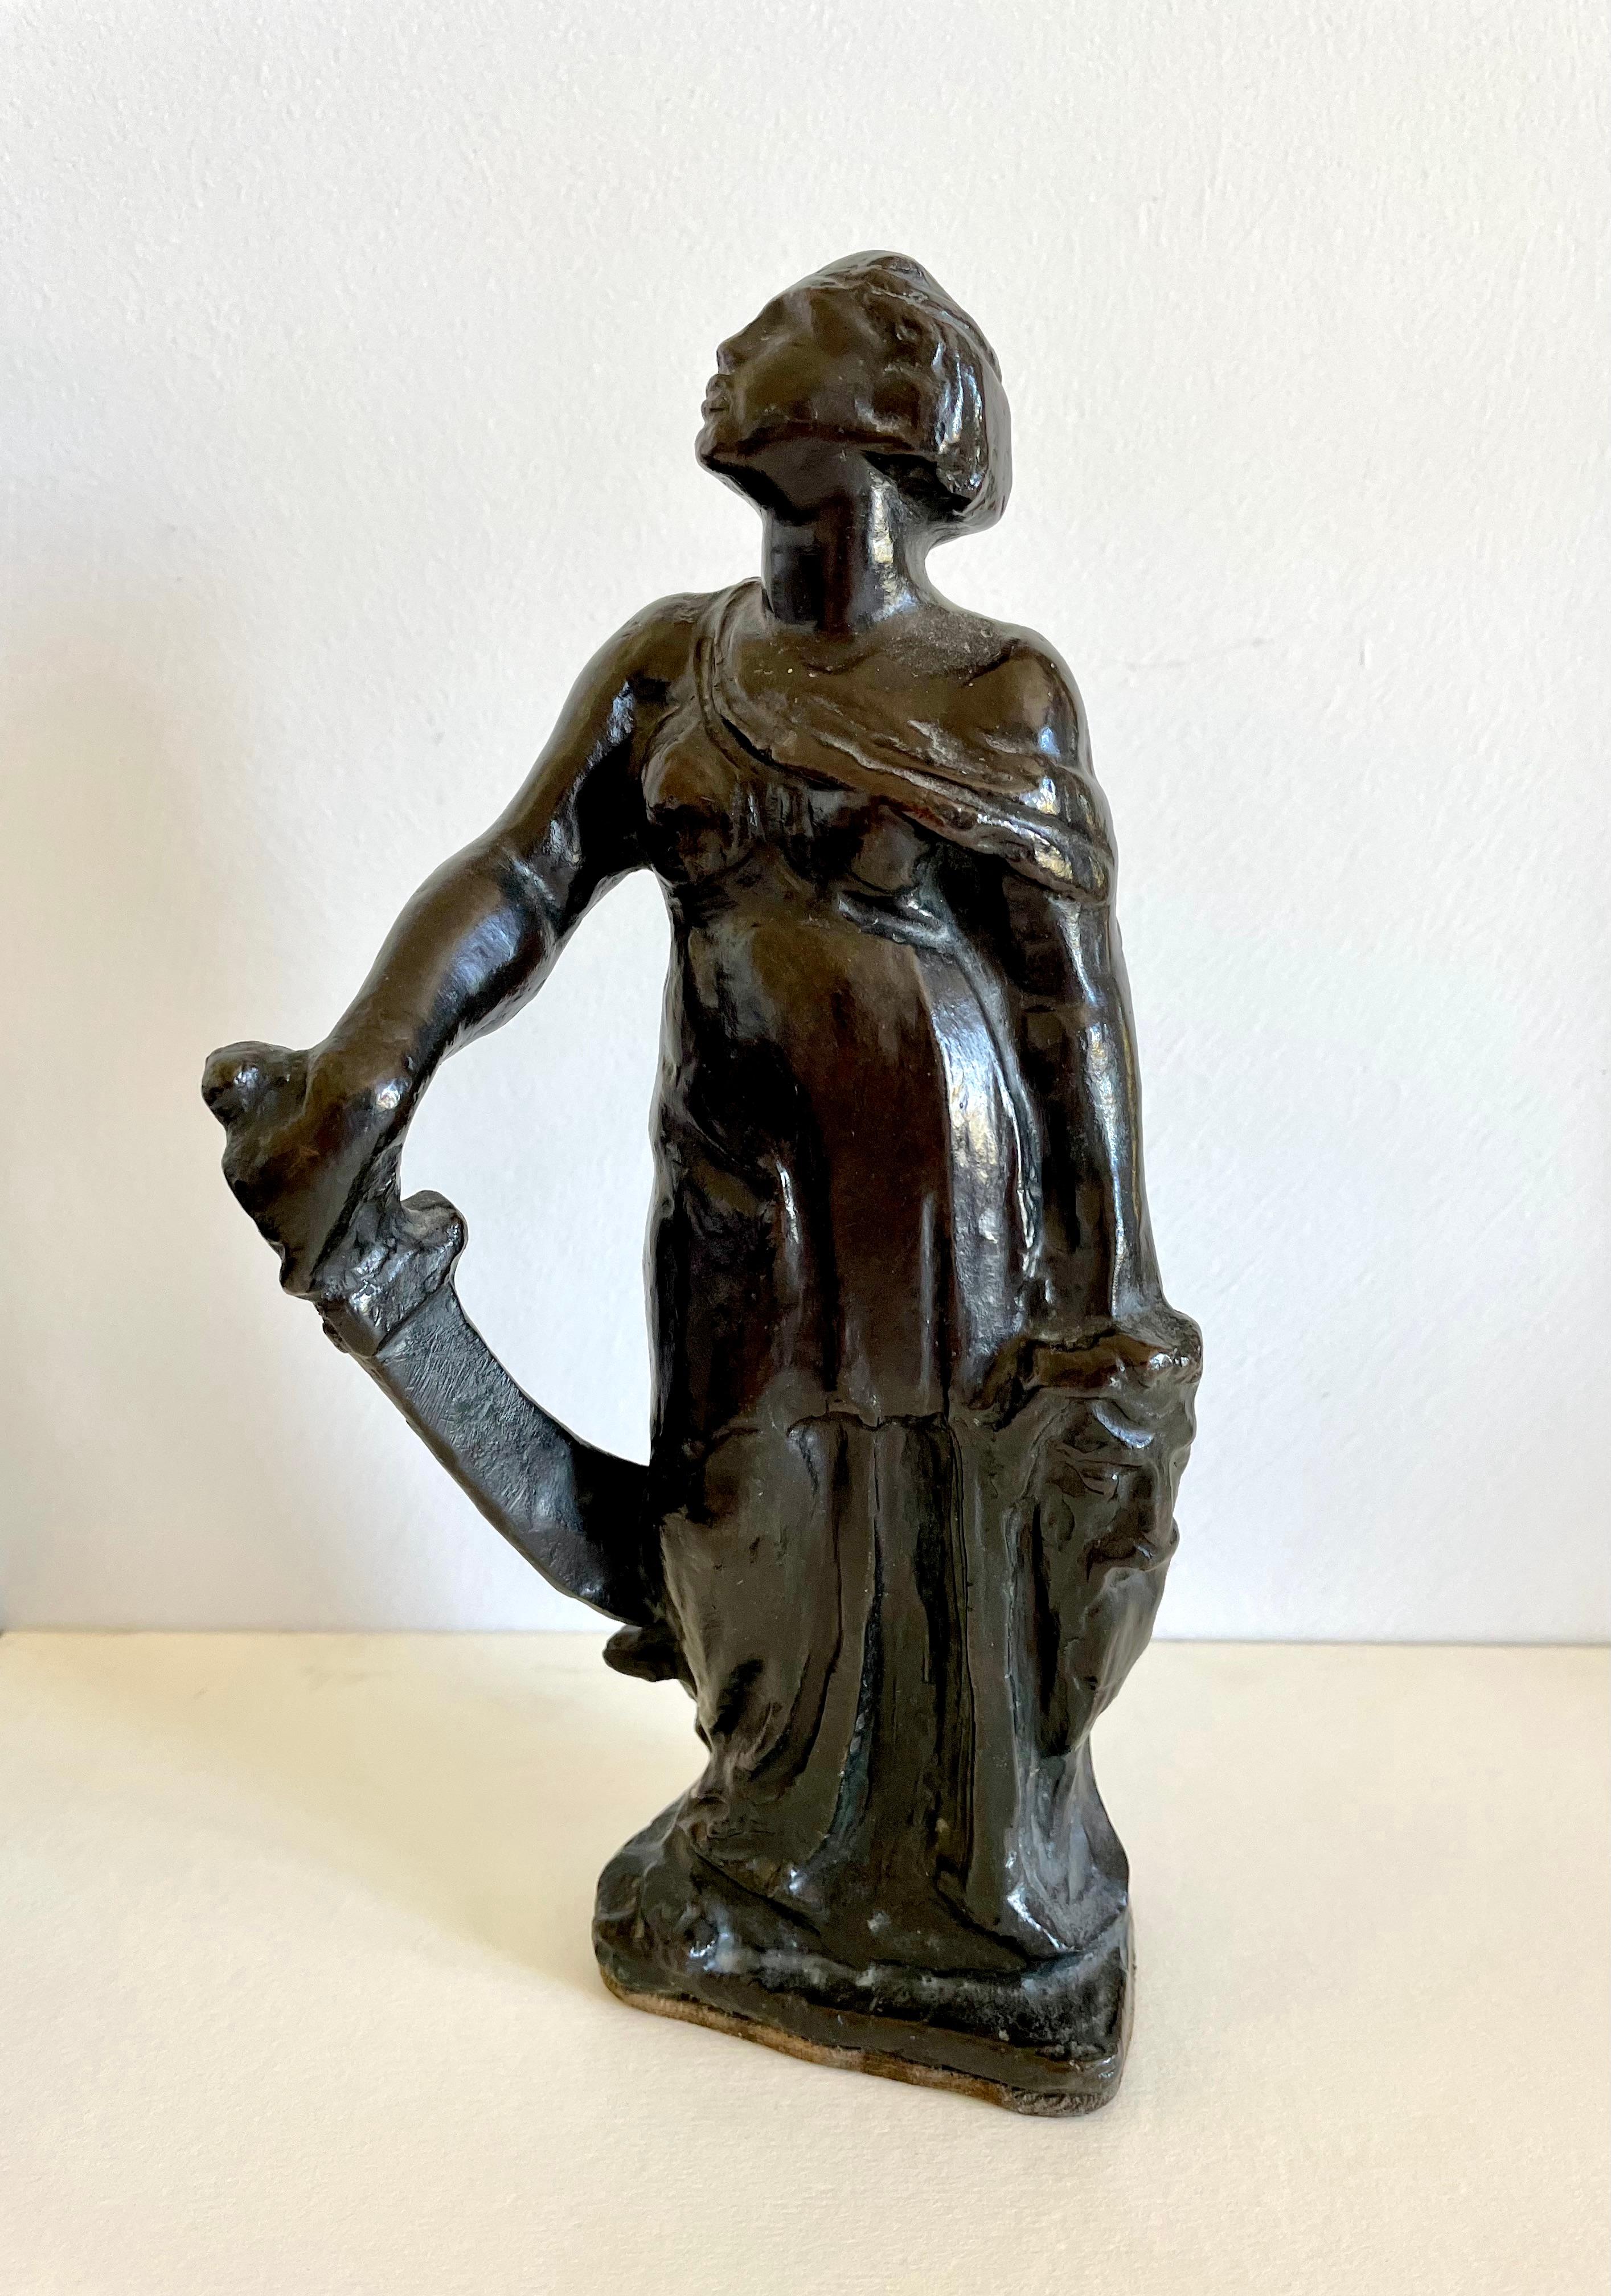 Alfred Stevens – britische Bronzefigur von Judith aus dem 19. Jahrhundert